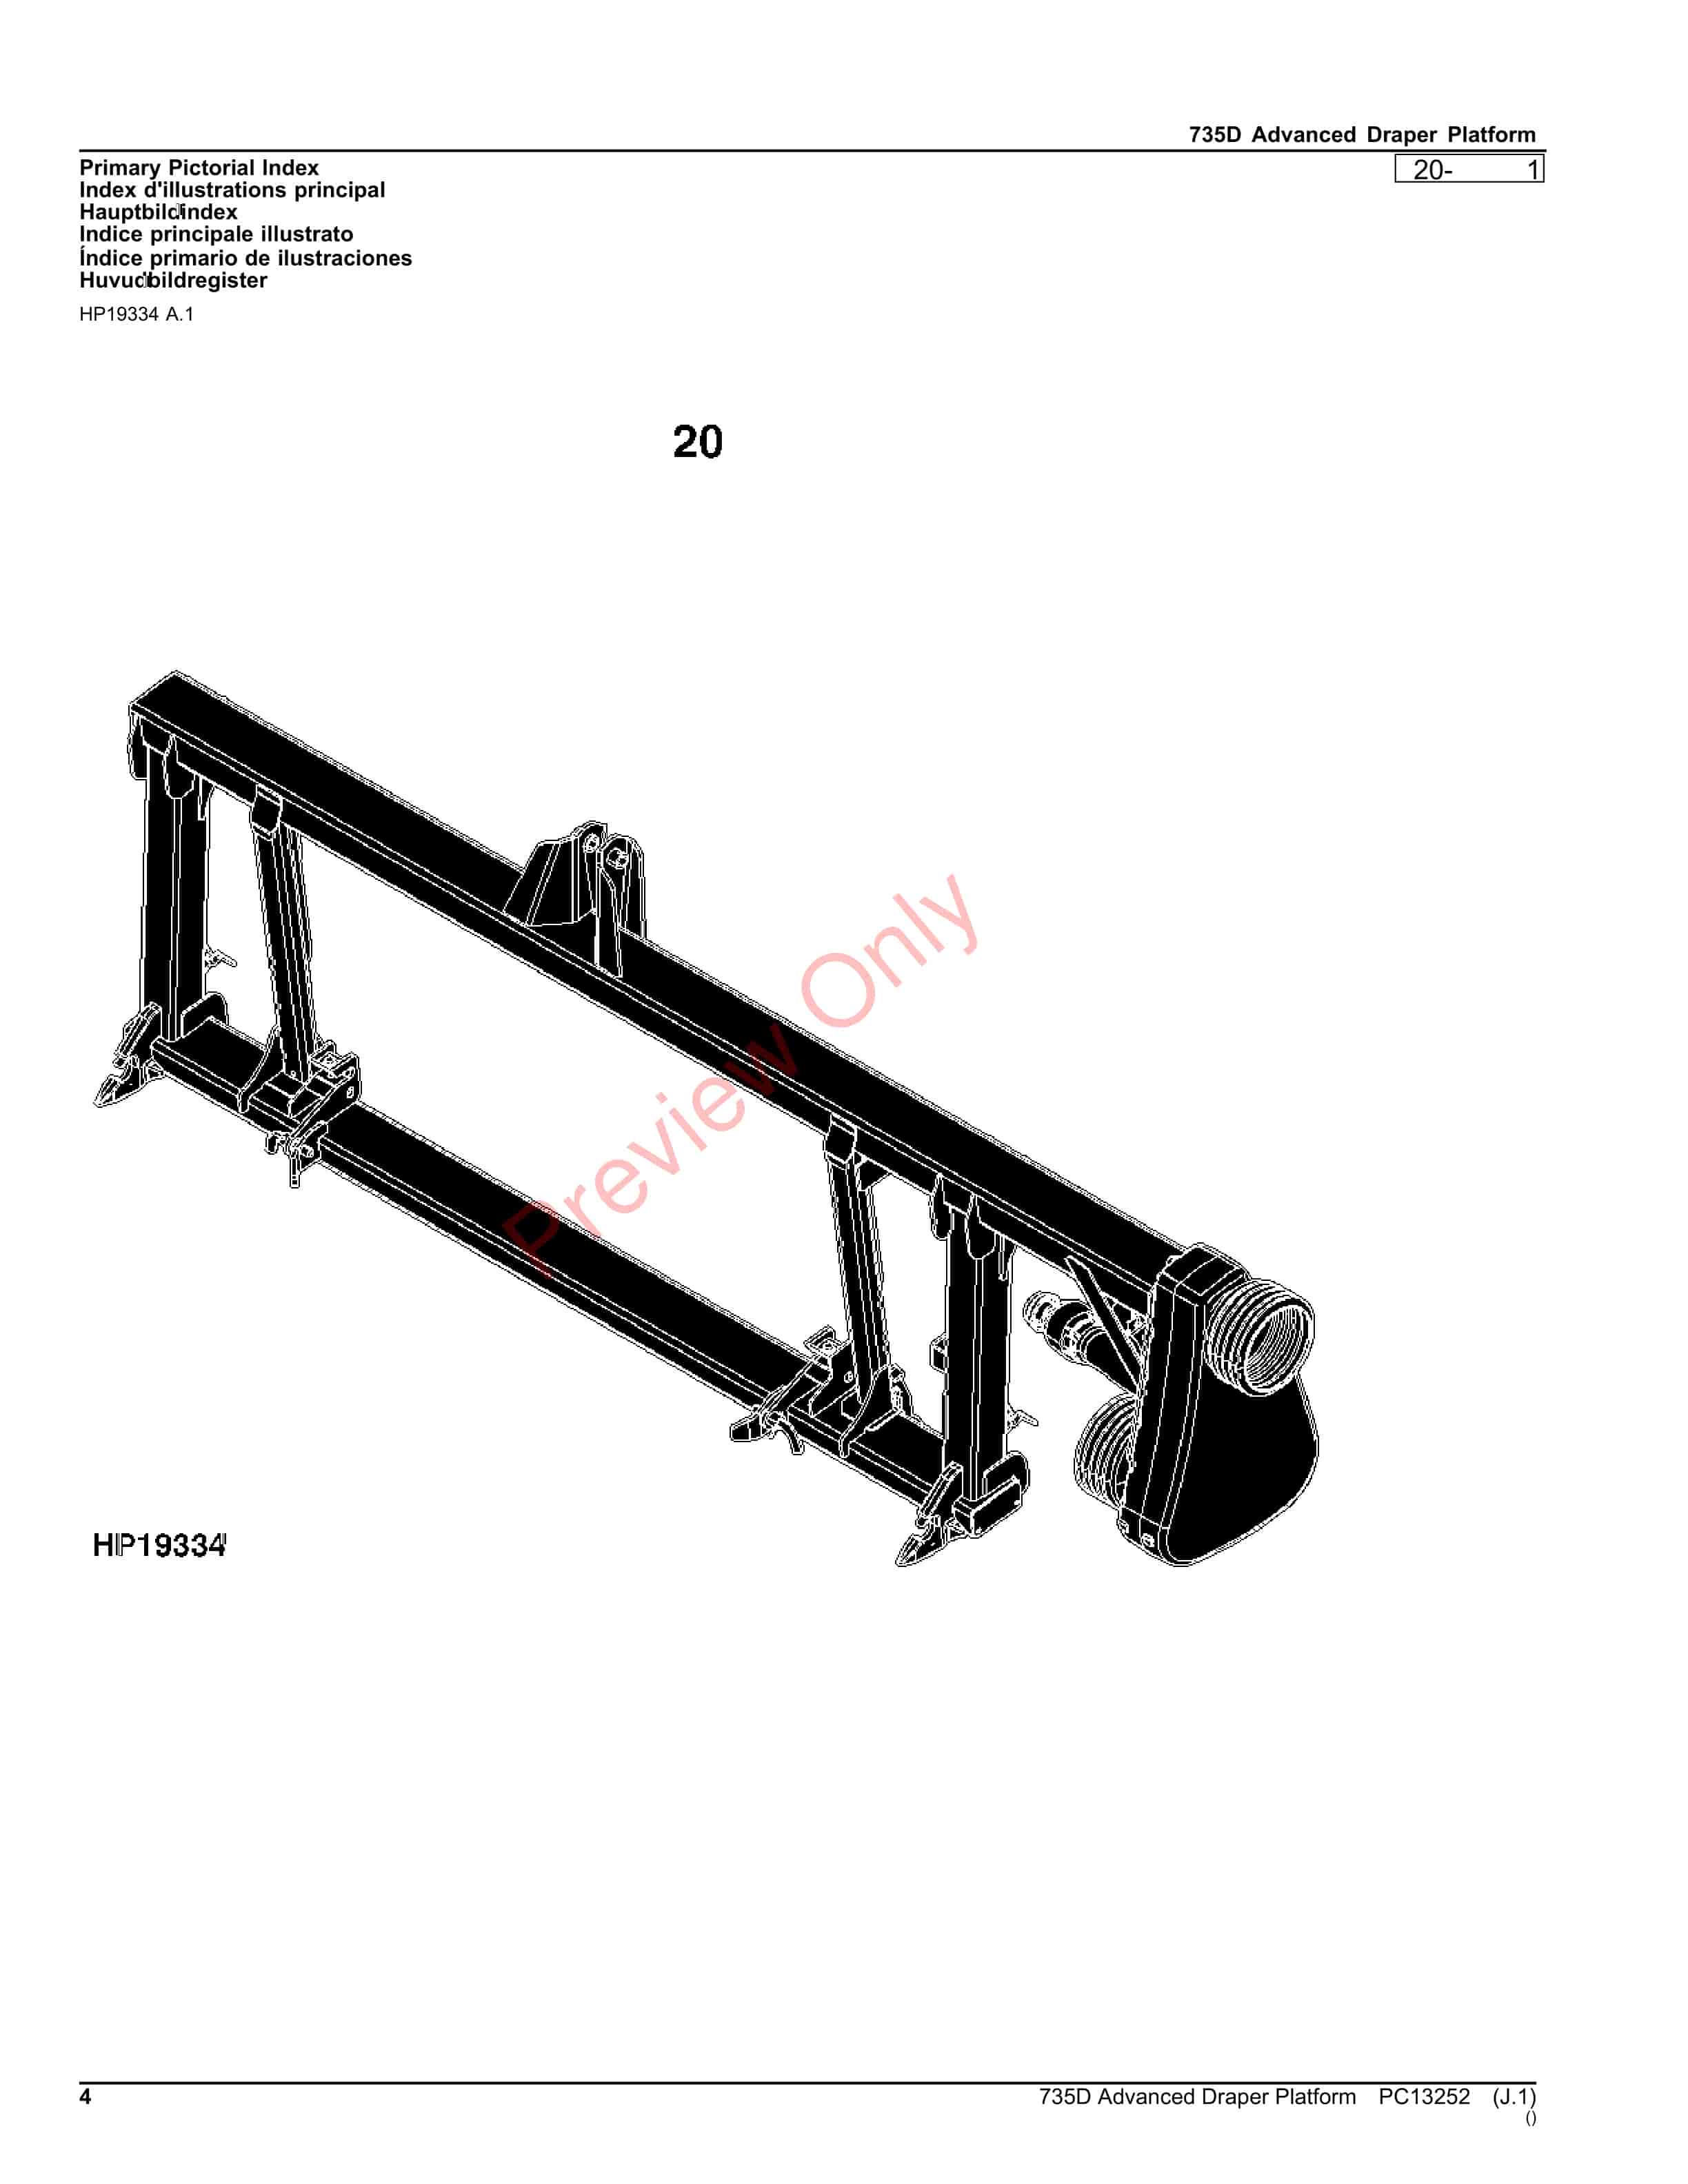 John Deere 735D Advanced Draper Platform Parts Catalog PC13252 26OCT23-4